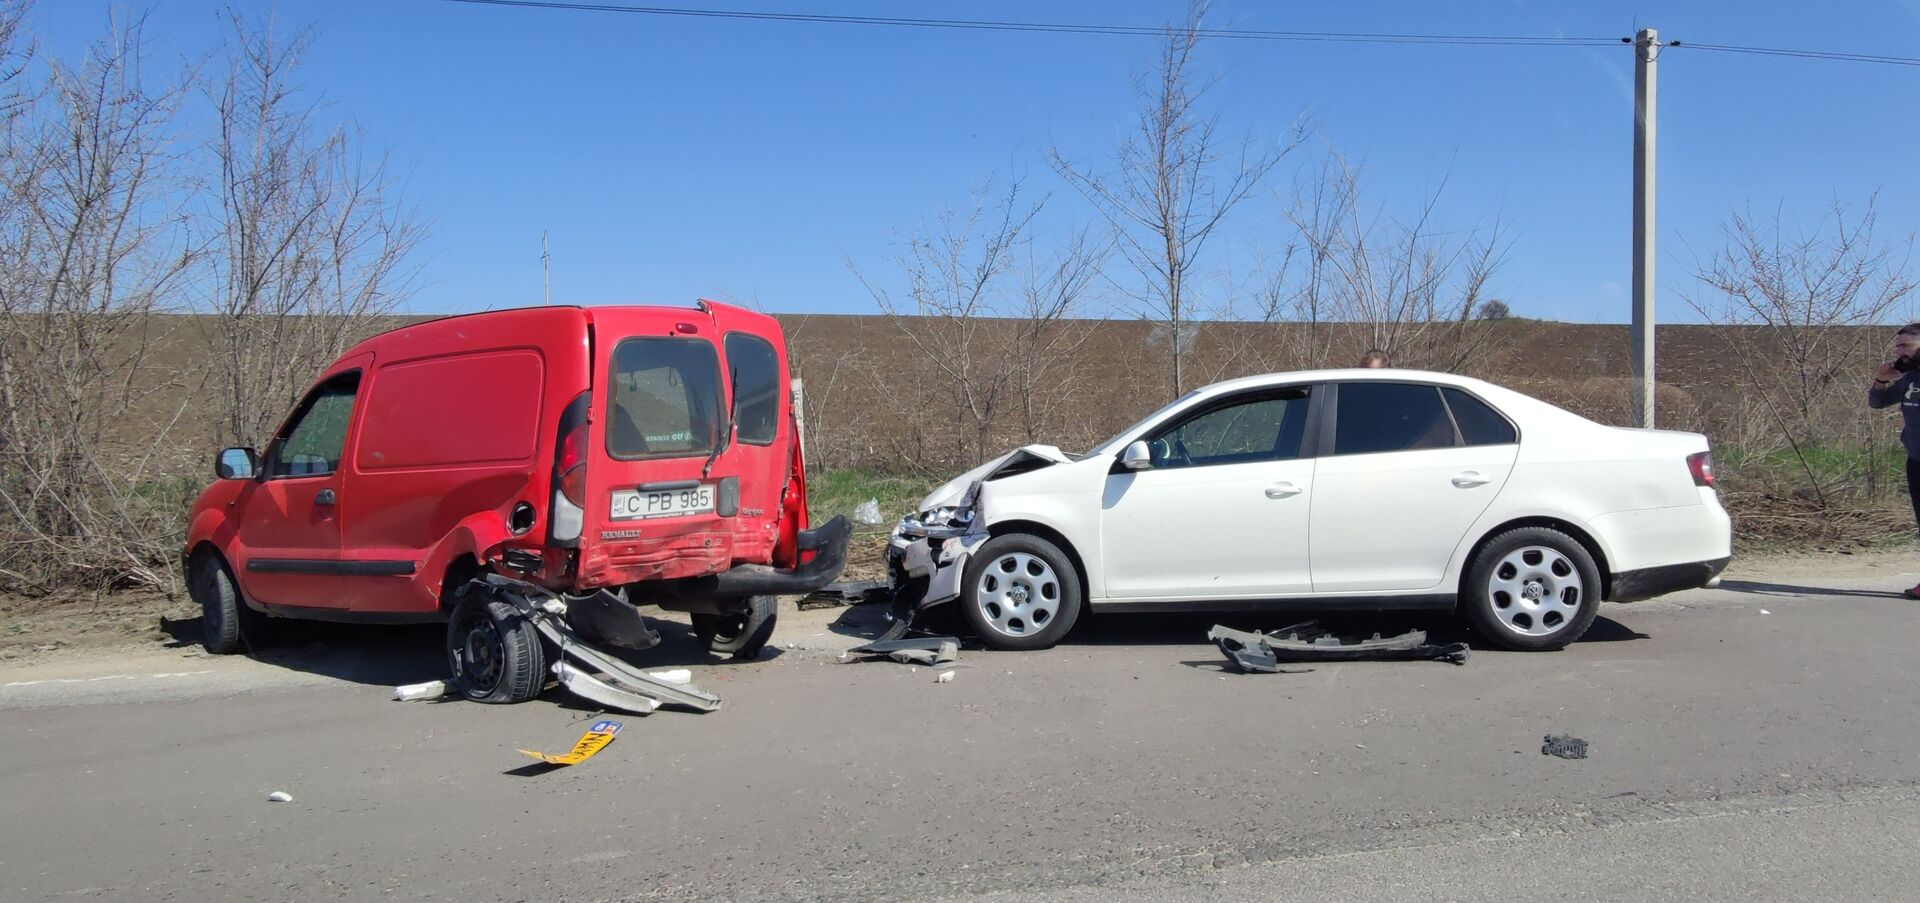 Foto: Accident cu implicarea a trei mașini în apropiere de Chișinău - Sputnik Moldova, 1920, 10.04.2021